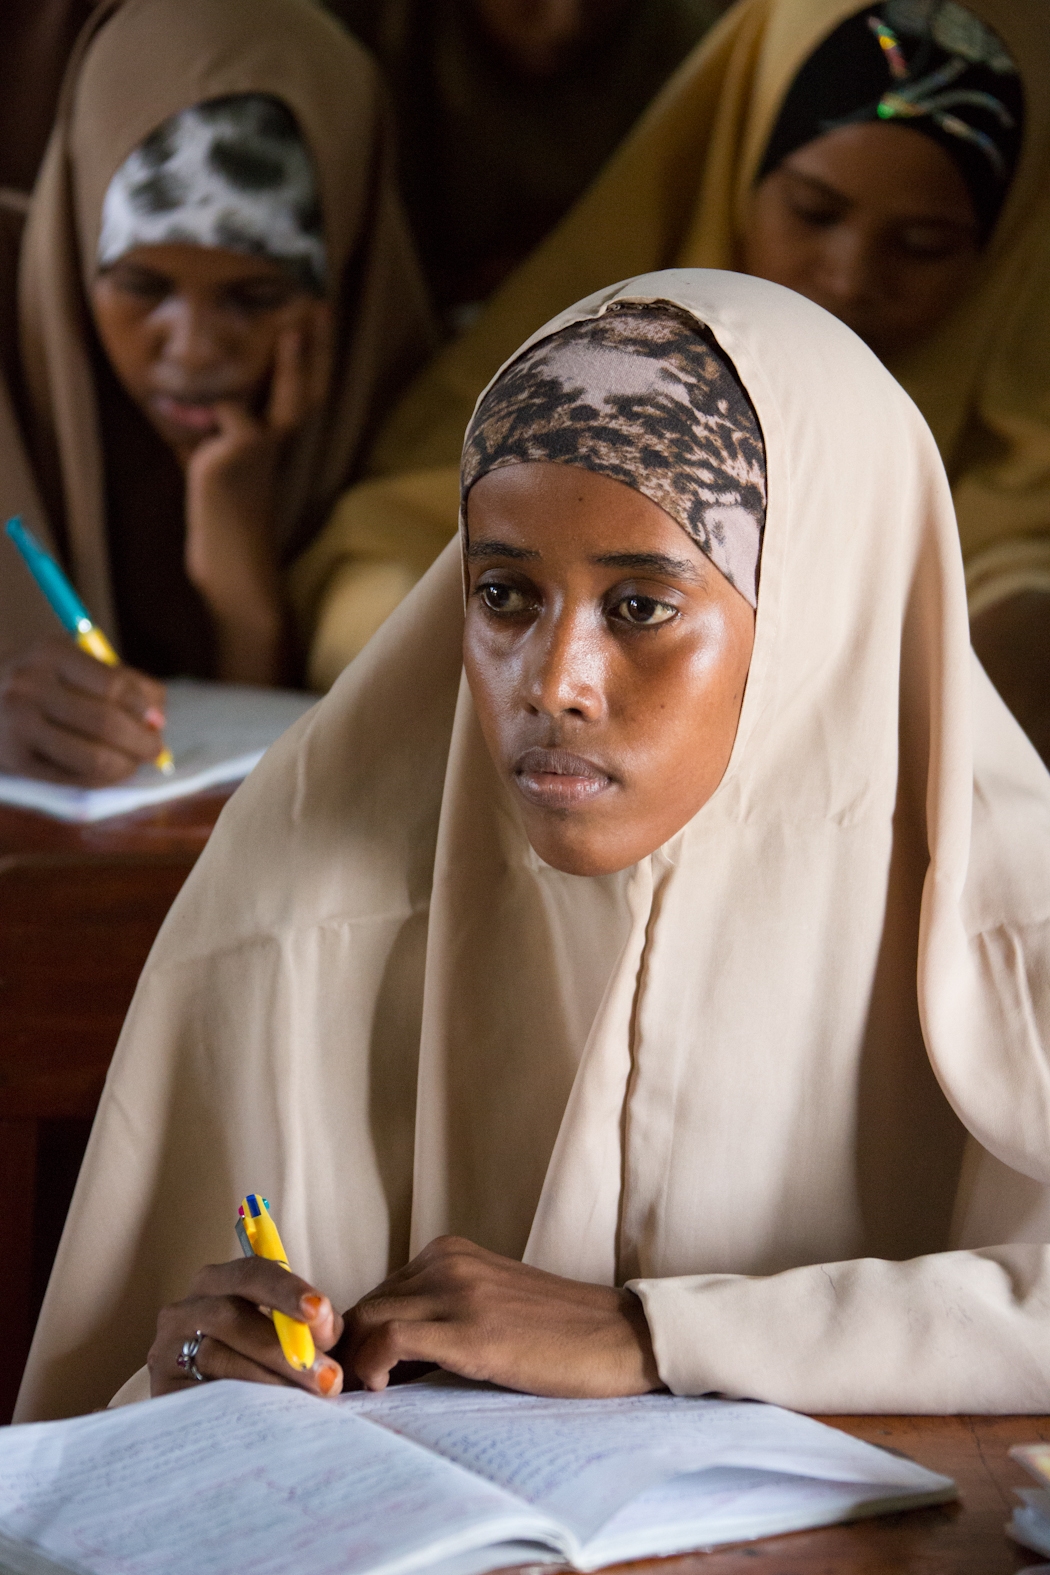 Somalijskie dziewczynki w szkole, Somalia 2012. Fot.Marcin Suder 